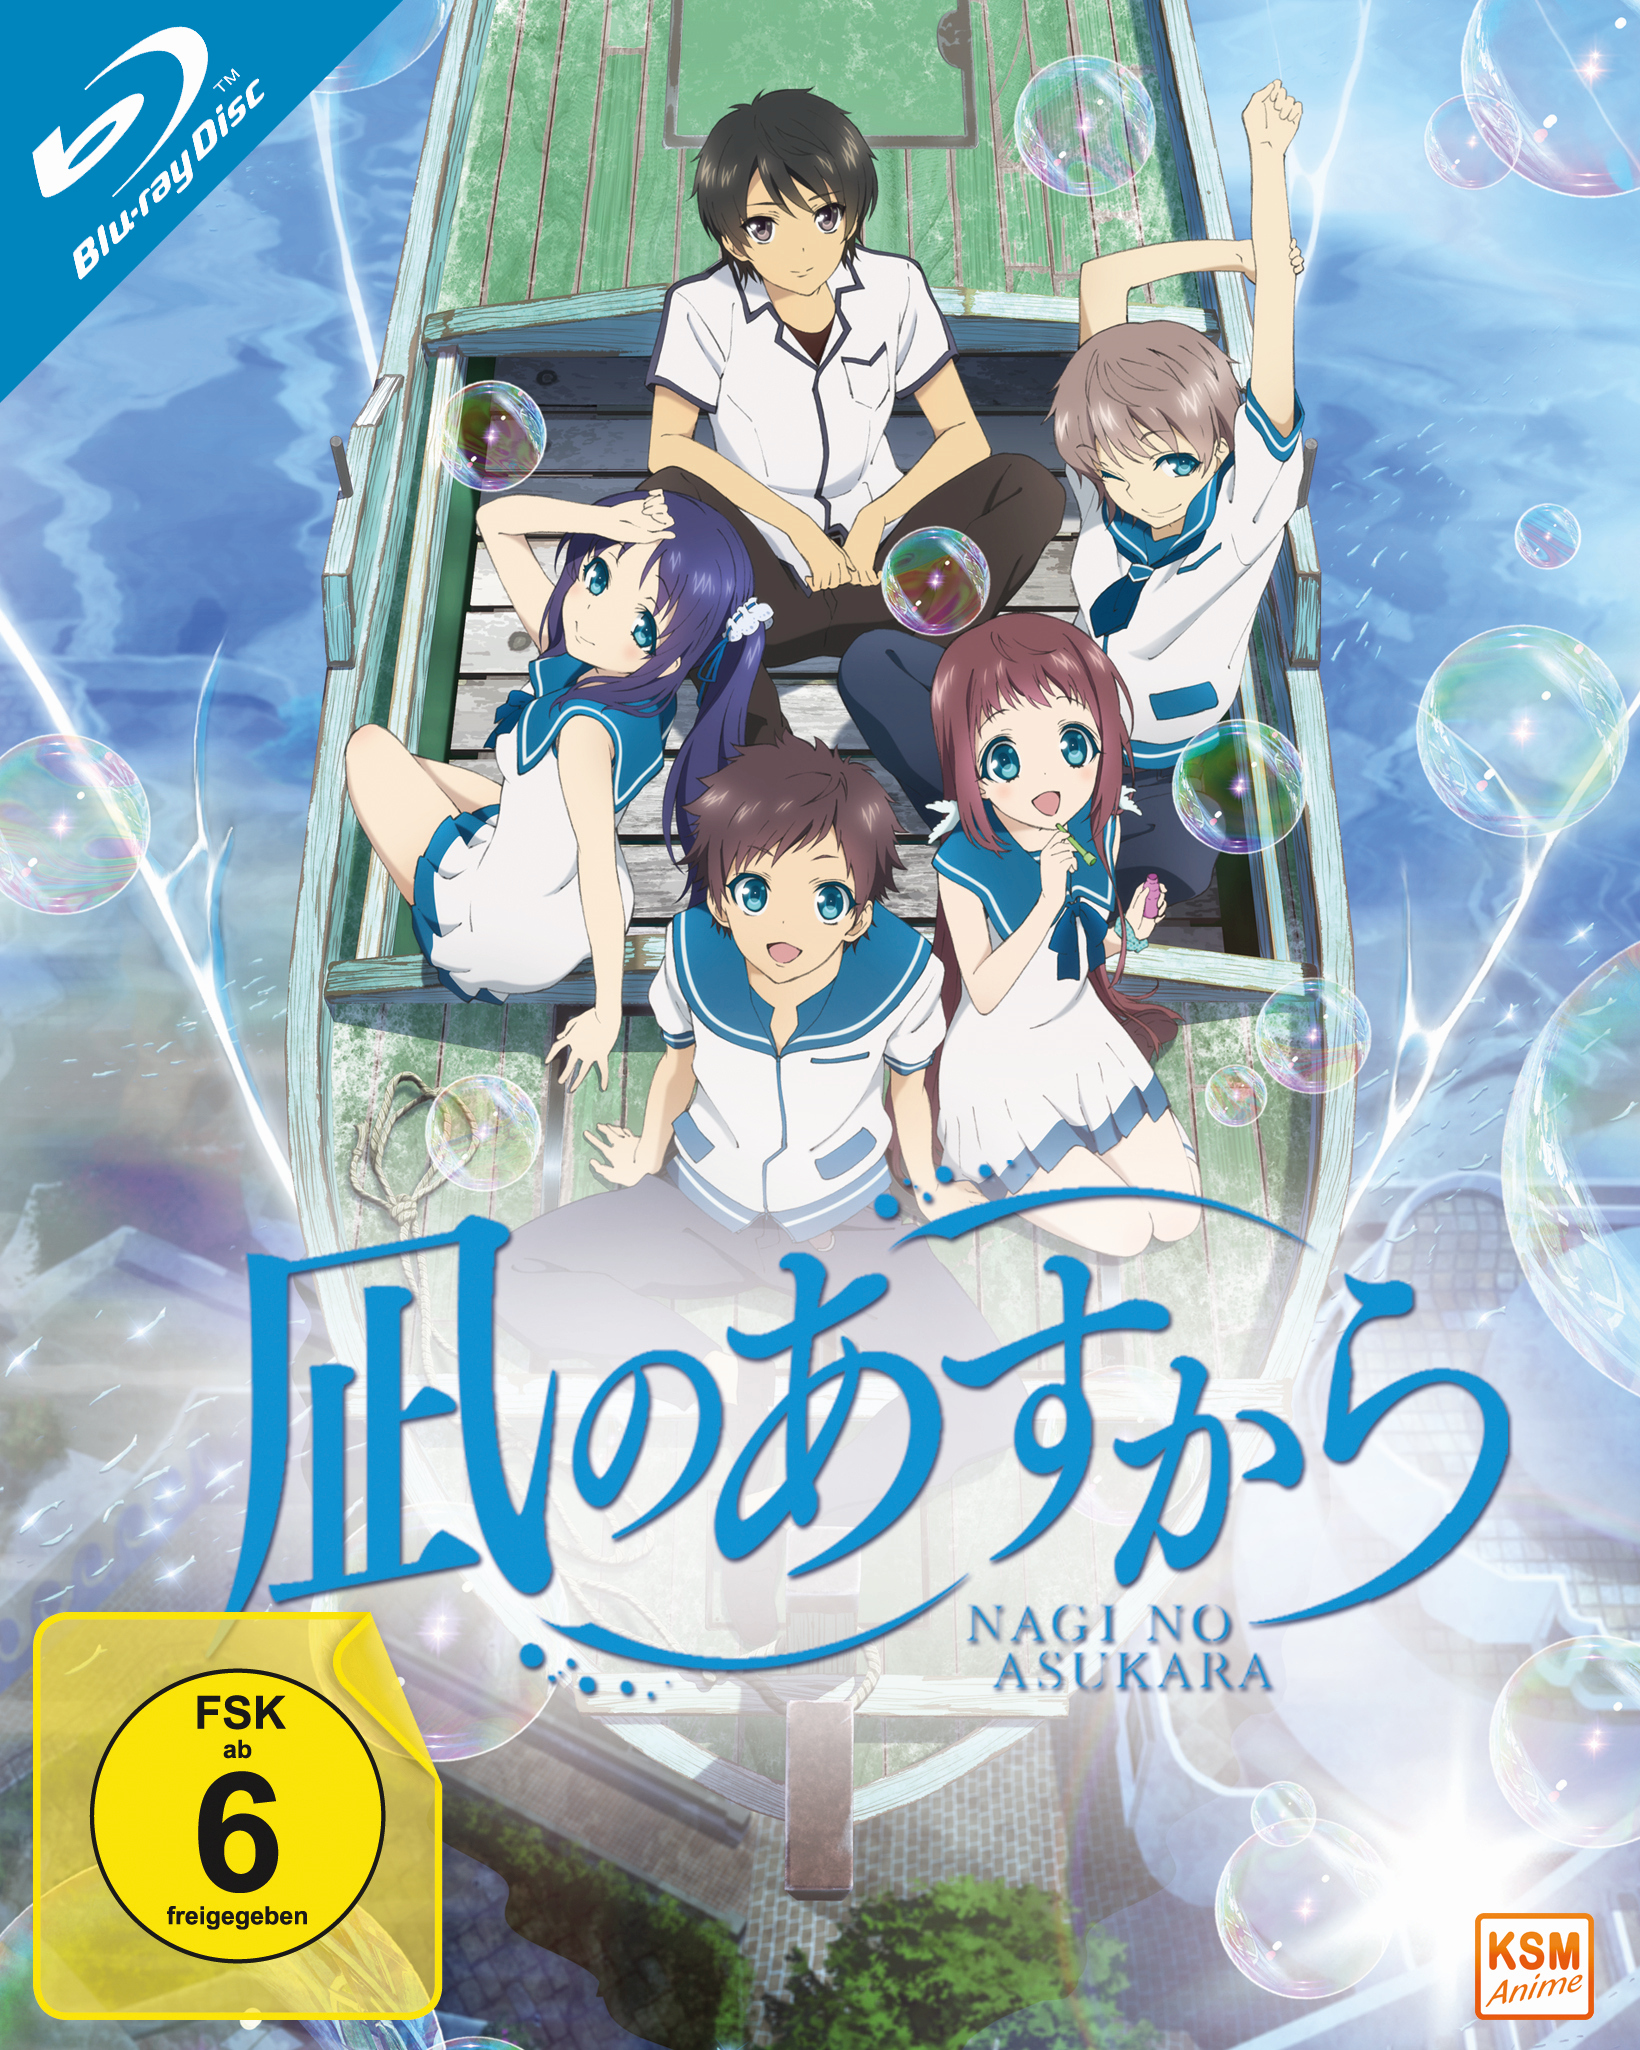 Nagi no Asukara - Volume 1: Episode 01-06 im Sammelschuber Blu-ray